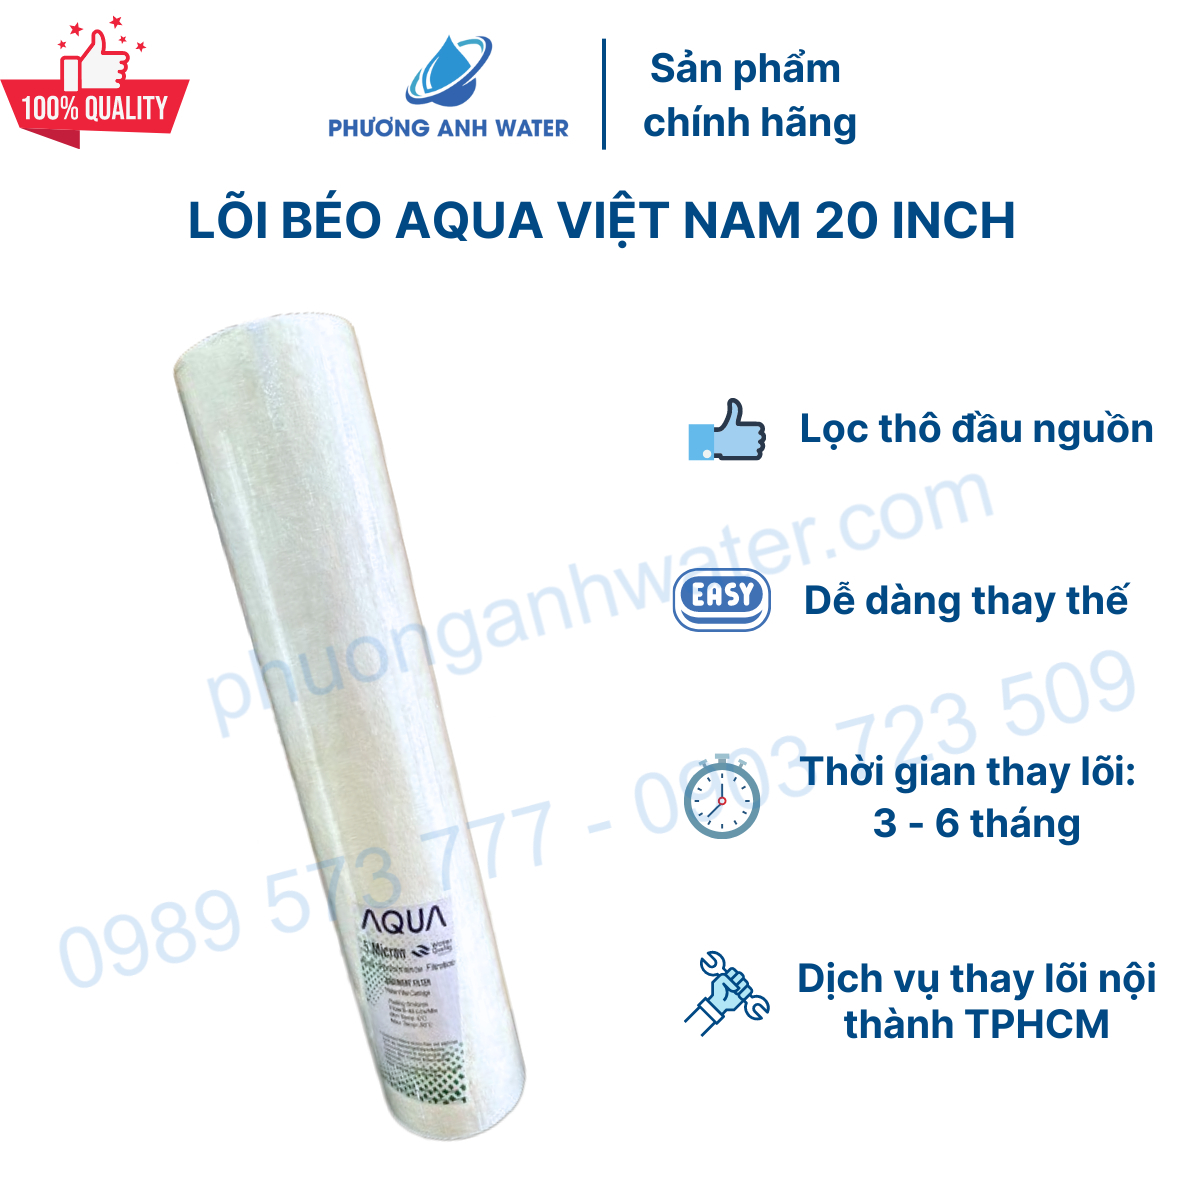 Lõi béo Aqua Việt Nam 20 inch dành cho cột Bigblue